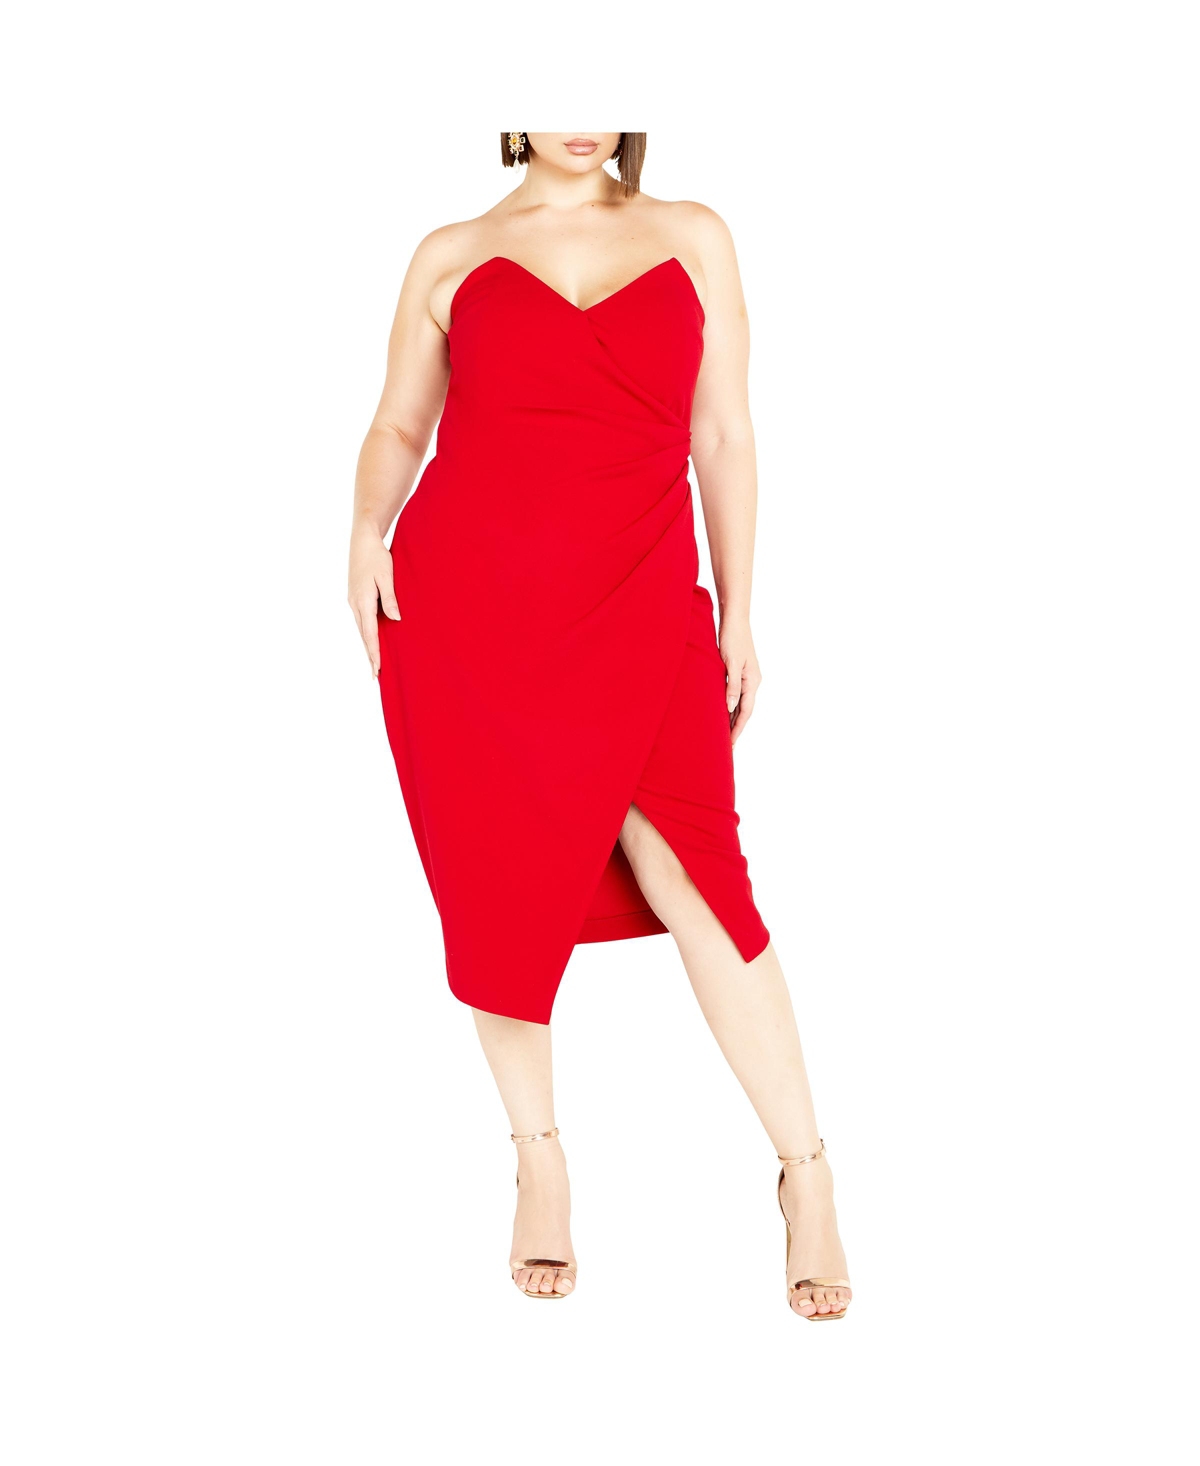 Women's Luisa Dress - Love red